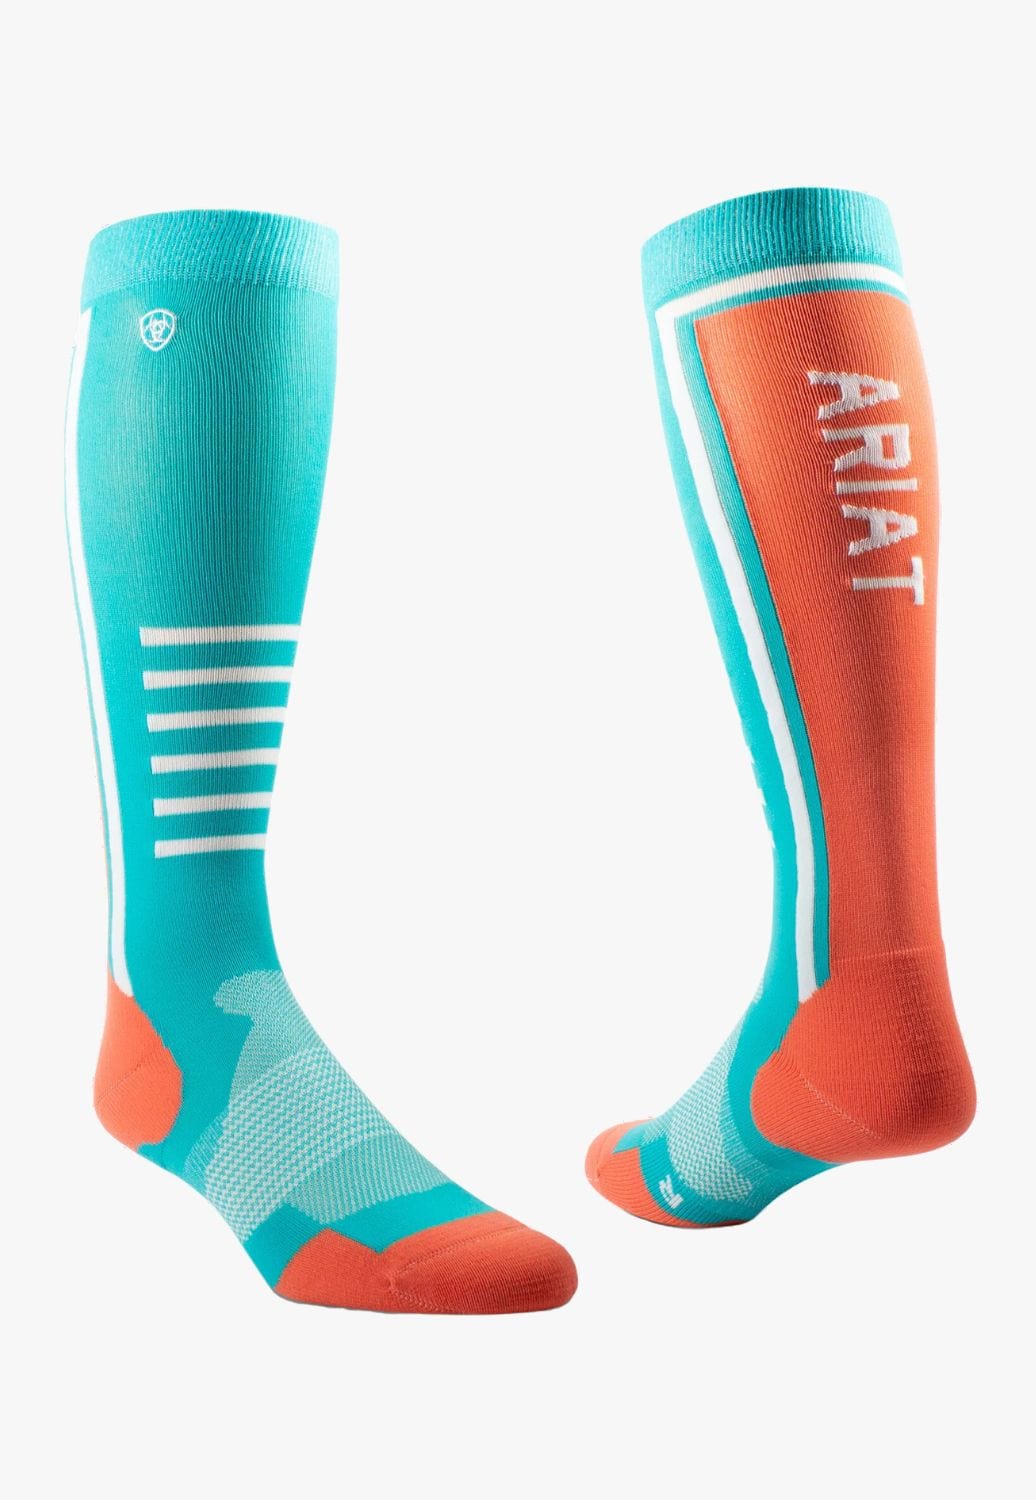 Ariat ACCESSORIES-Socks OSFA / Teal/Orange Ariat Tek Slimline Performance Sock